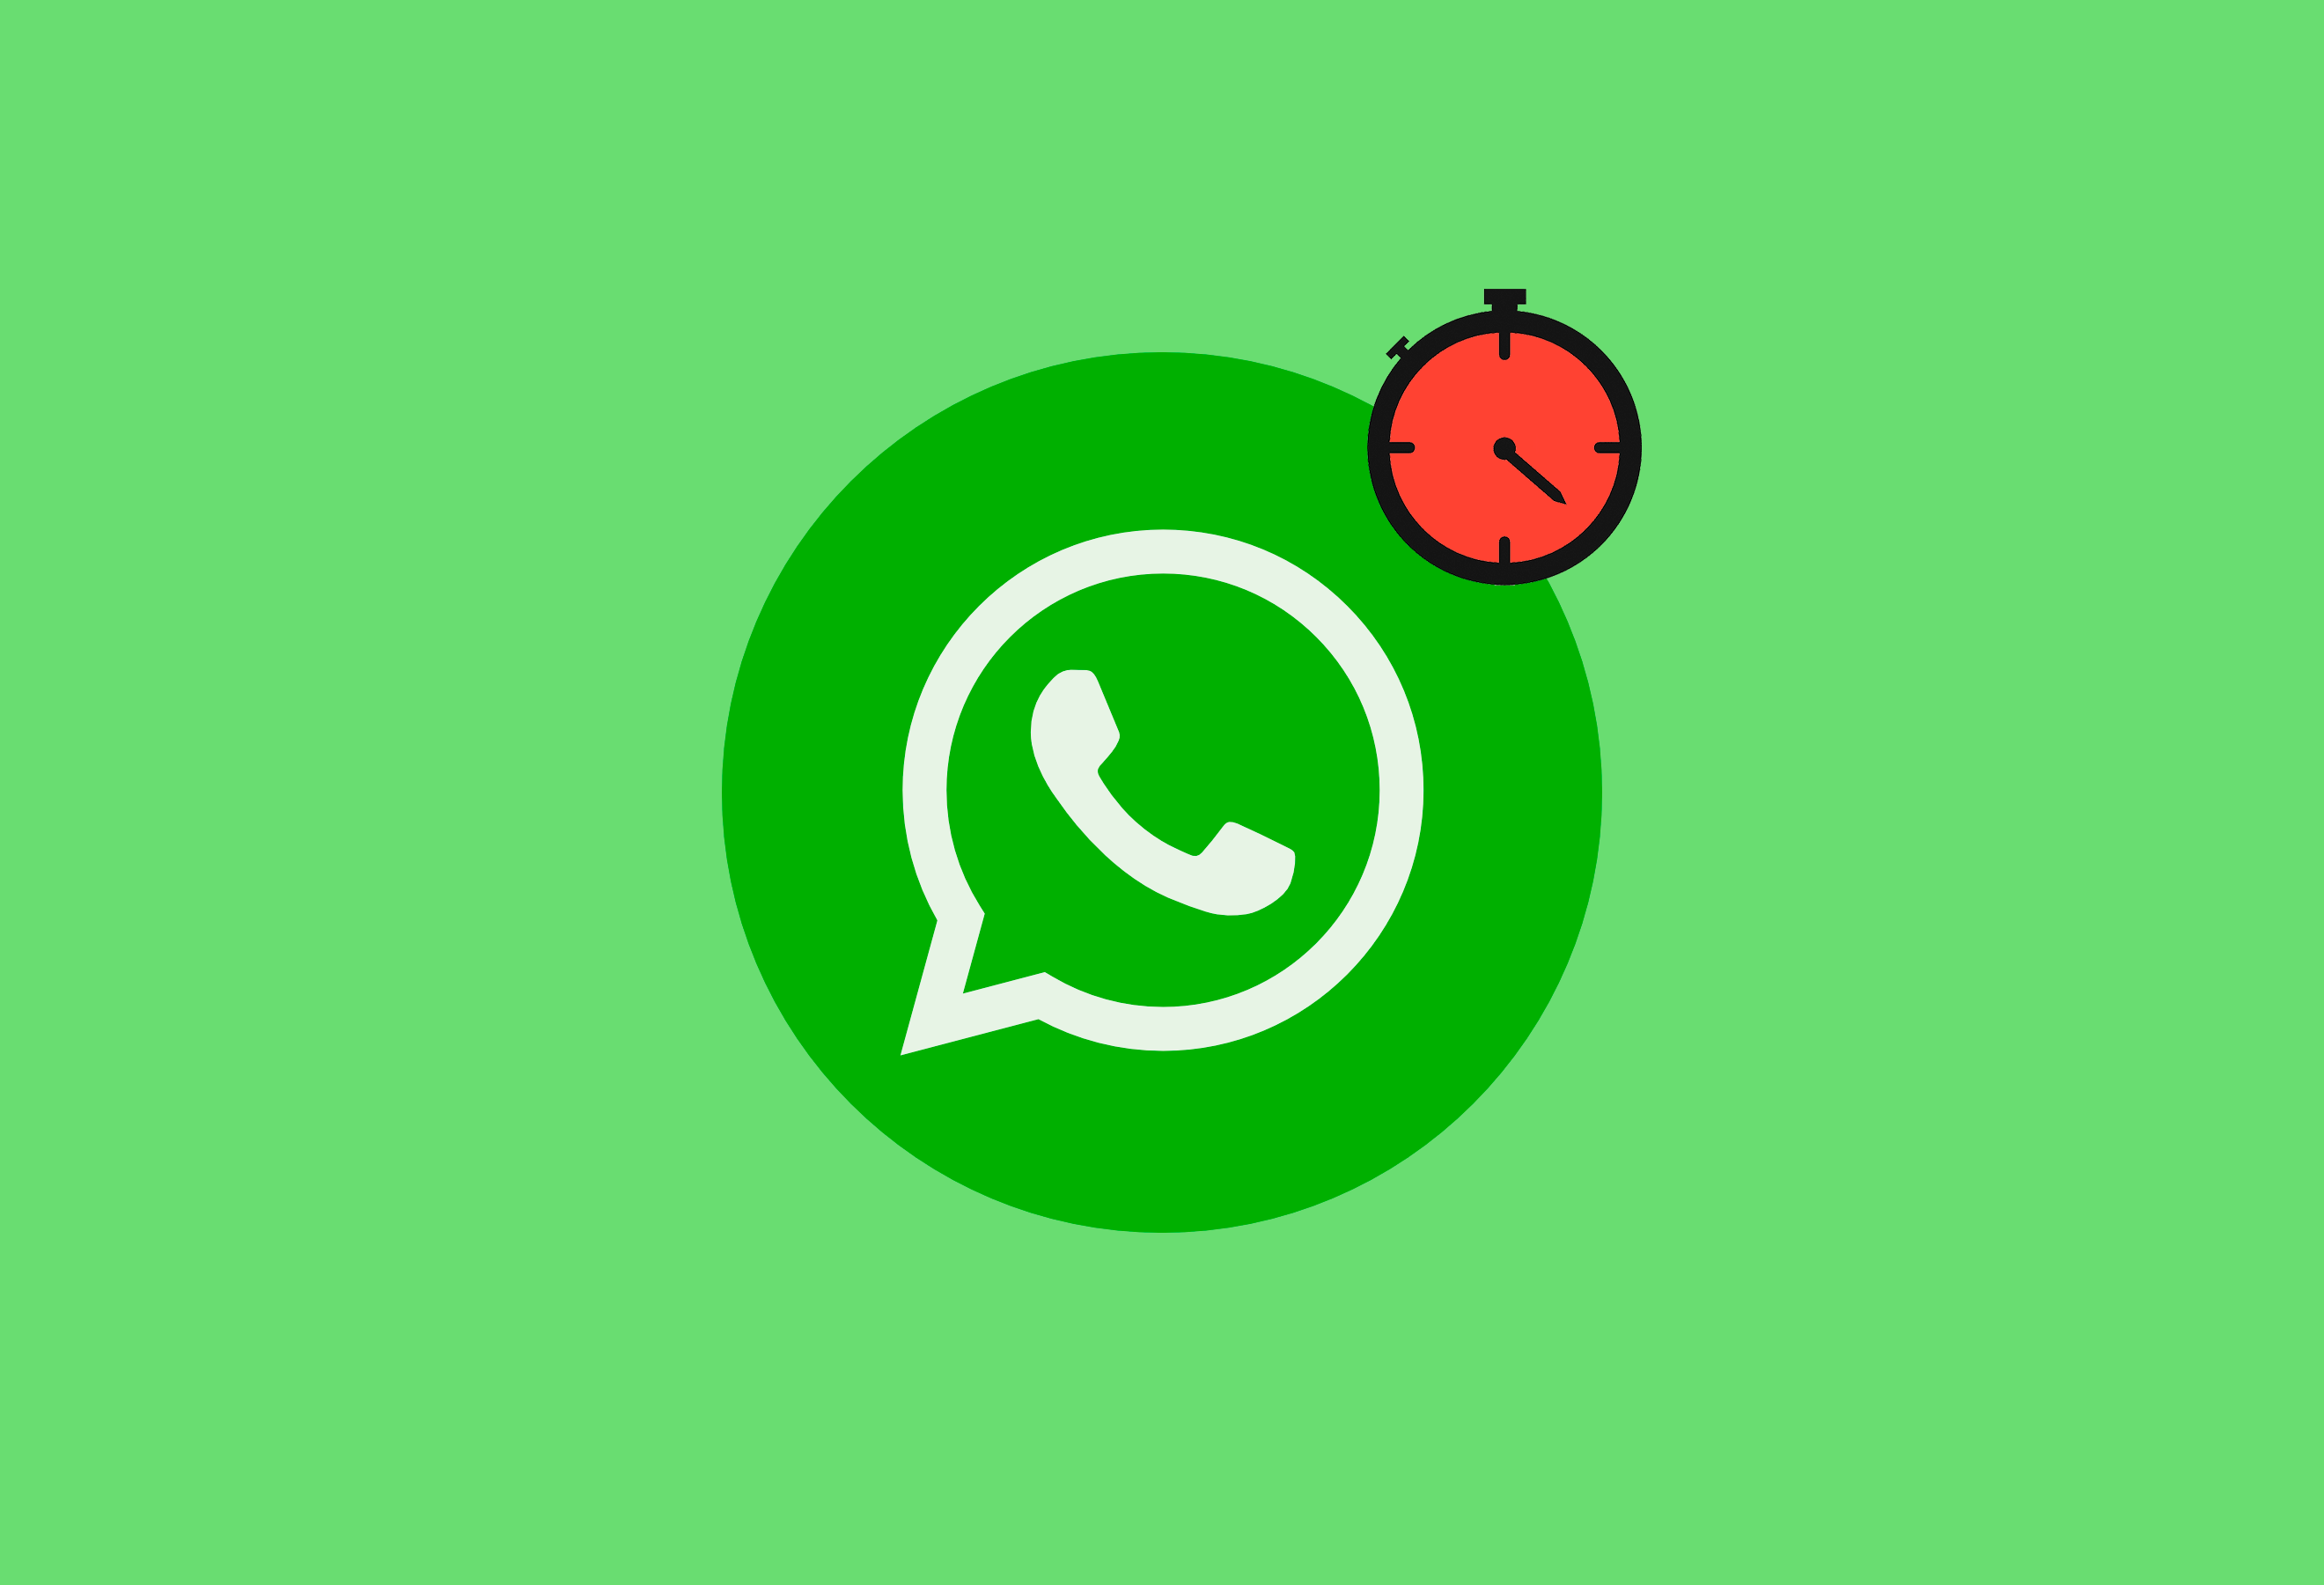 Esperando mensaje: WhatsApp está caído con dificultad para enviar mensajes